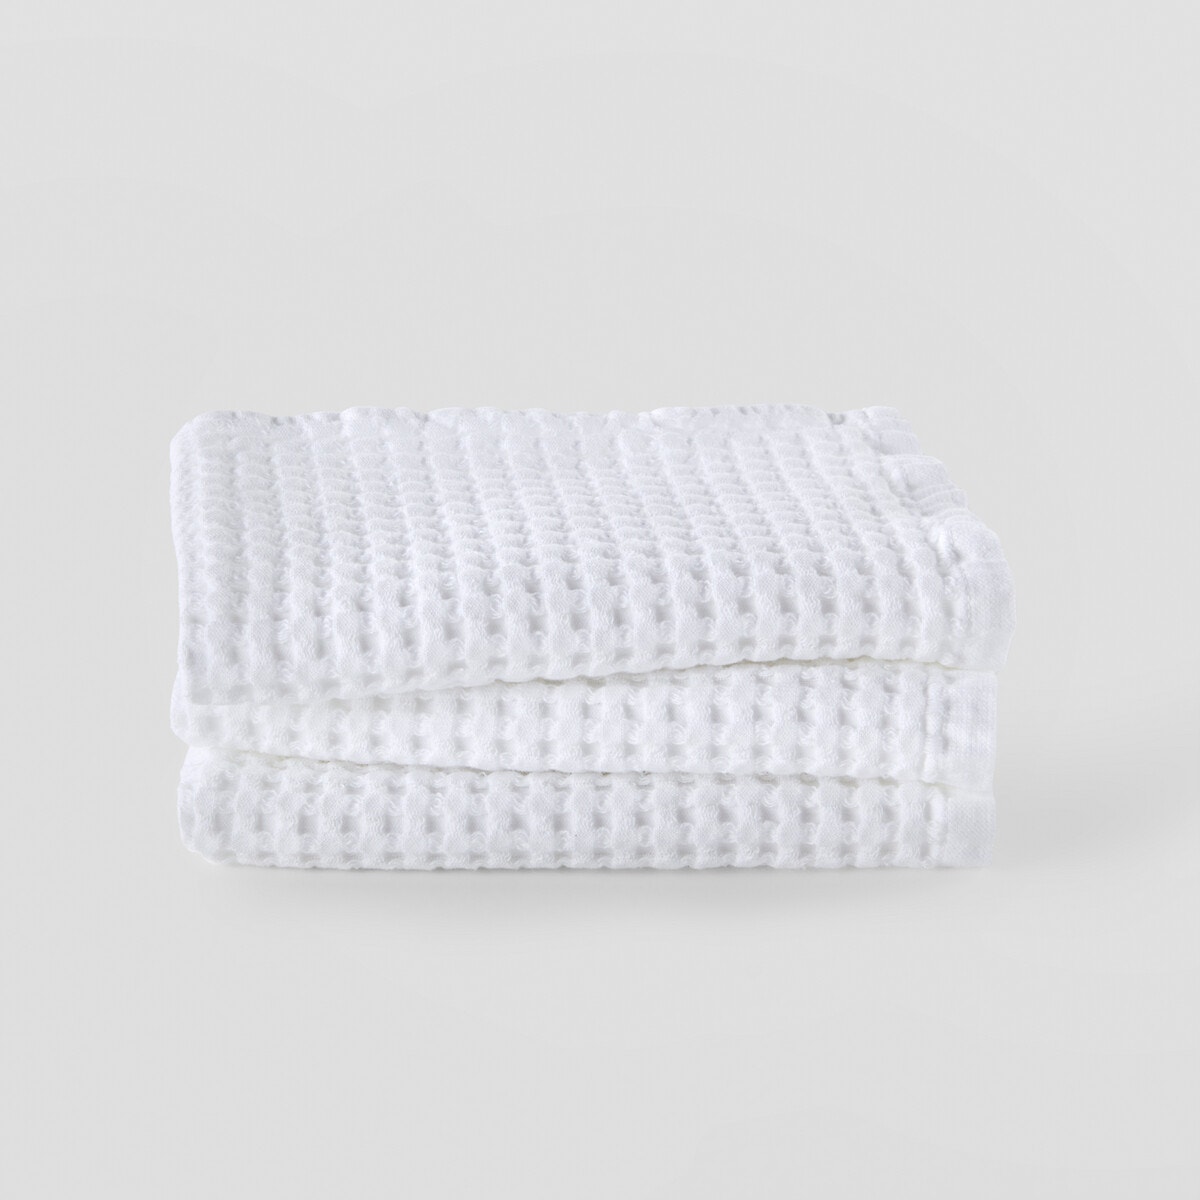 Σπίτι > Λευκά είδη > Μπάνιο > Πετσέτες προσώπου Σετ 3 βαμβακερές πετσέτες χεριών 30x50 cm